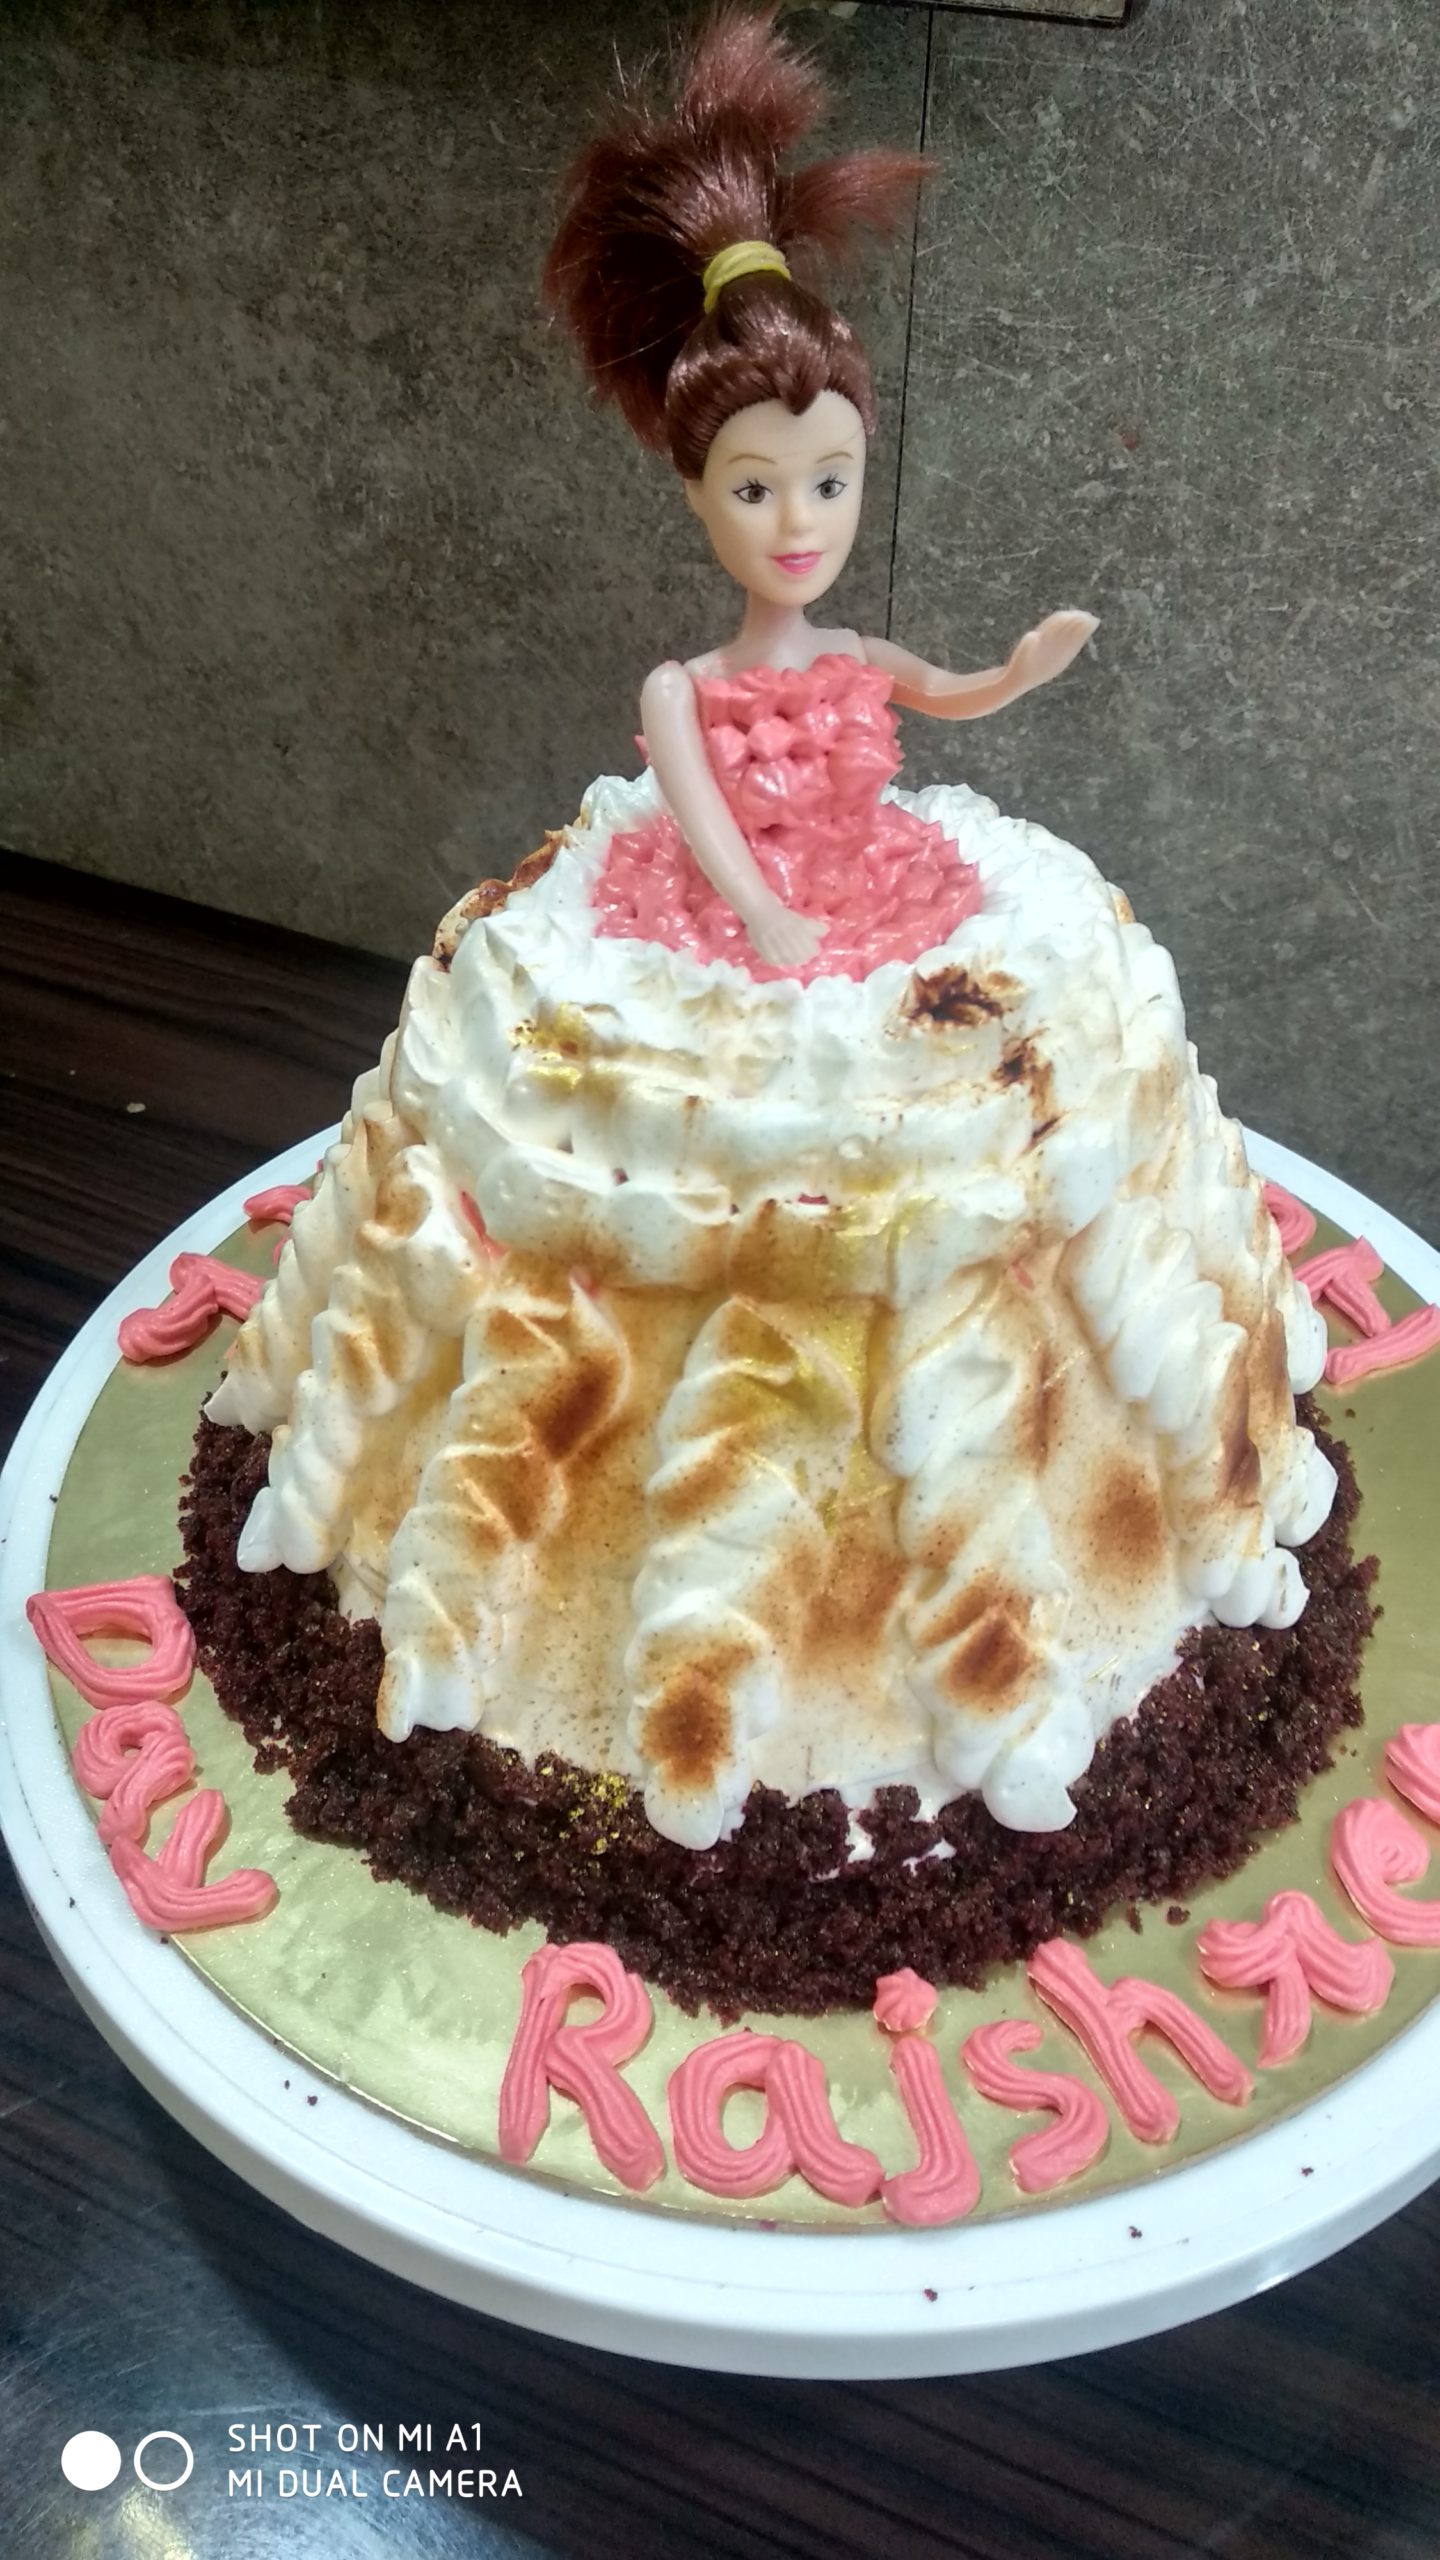 Red Velvet Cake (Doll Shape) Designs, Images, Price Near Me